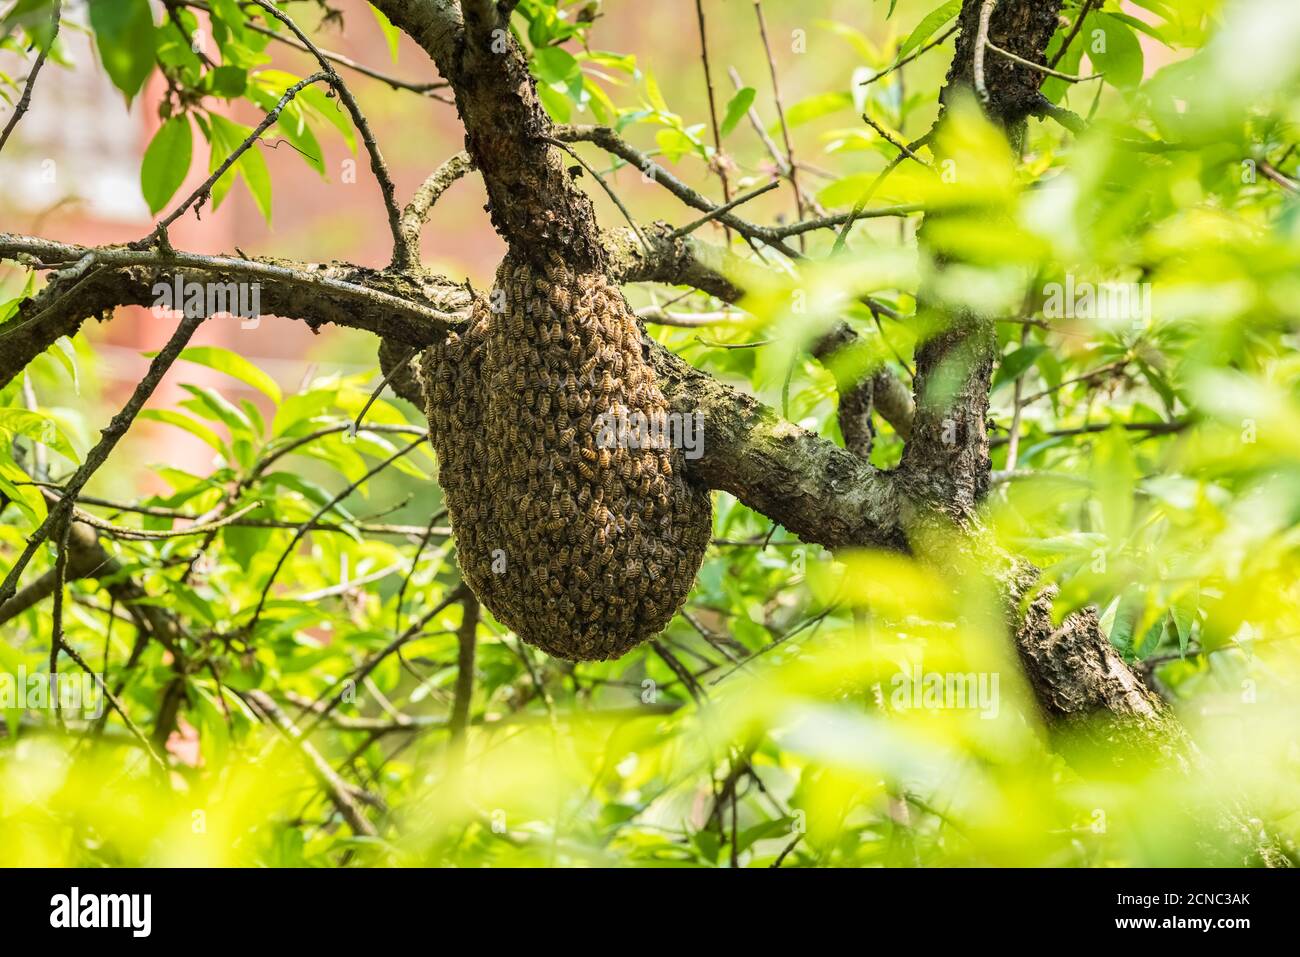 wild beehive on tree Stock Photo